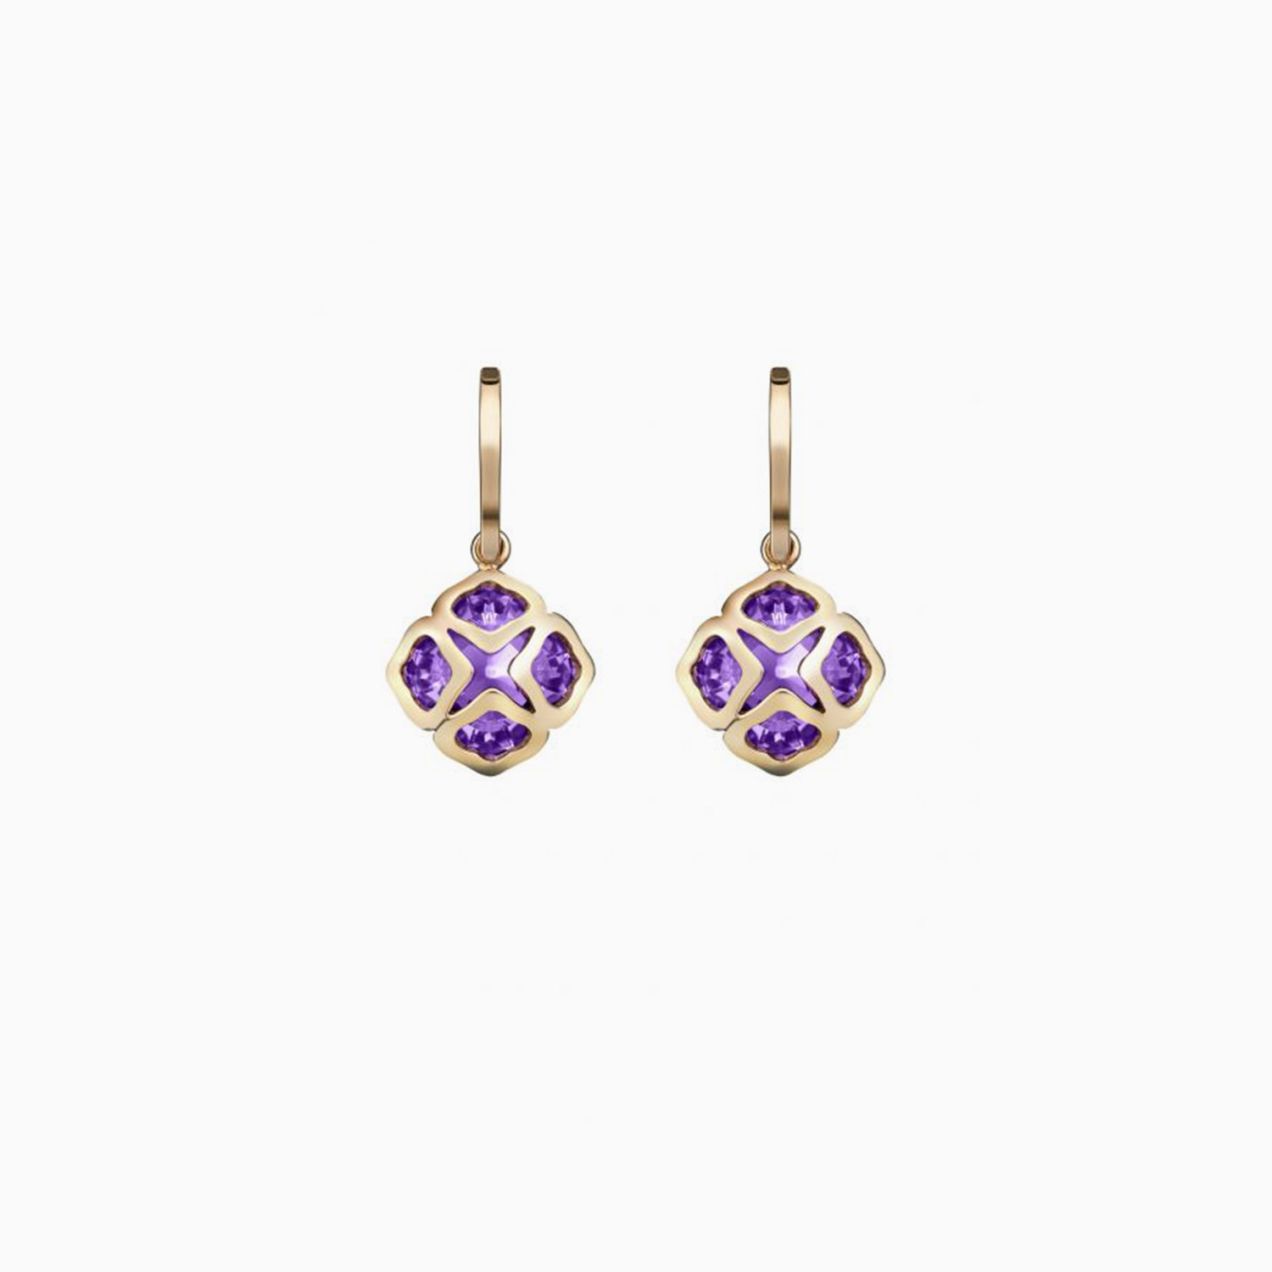 Chopard Imperiale earrings 